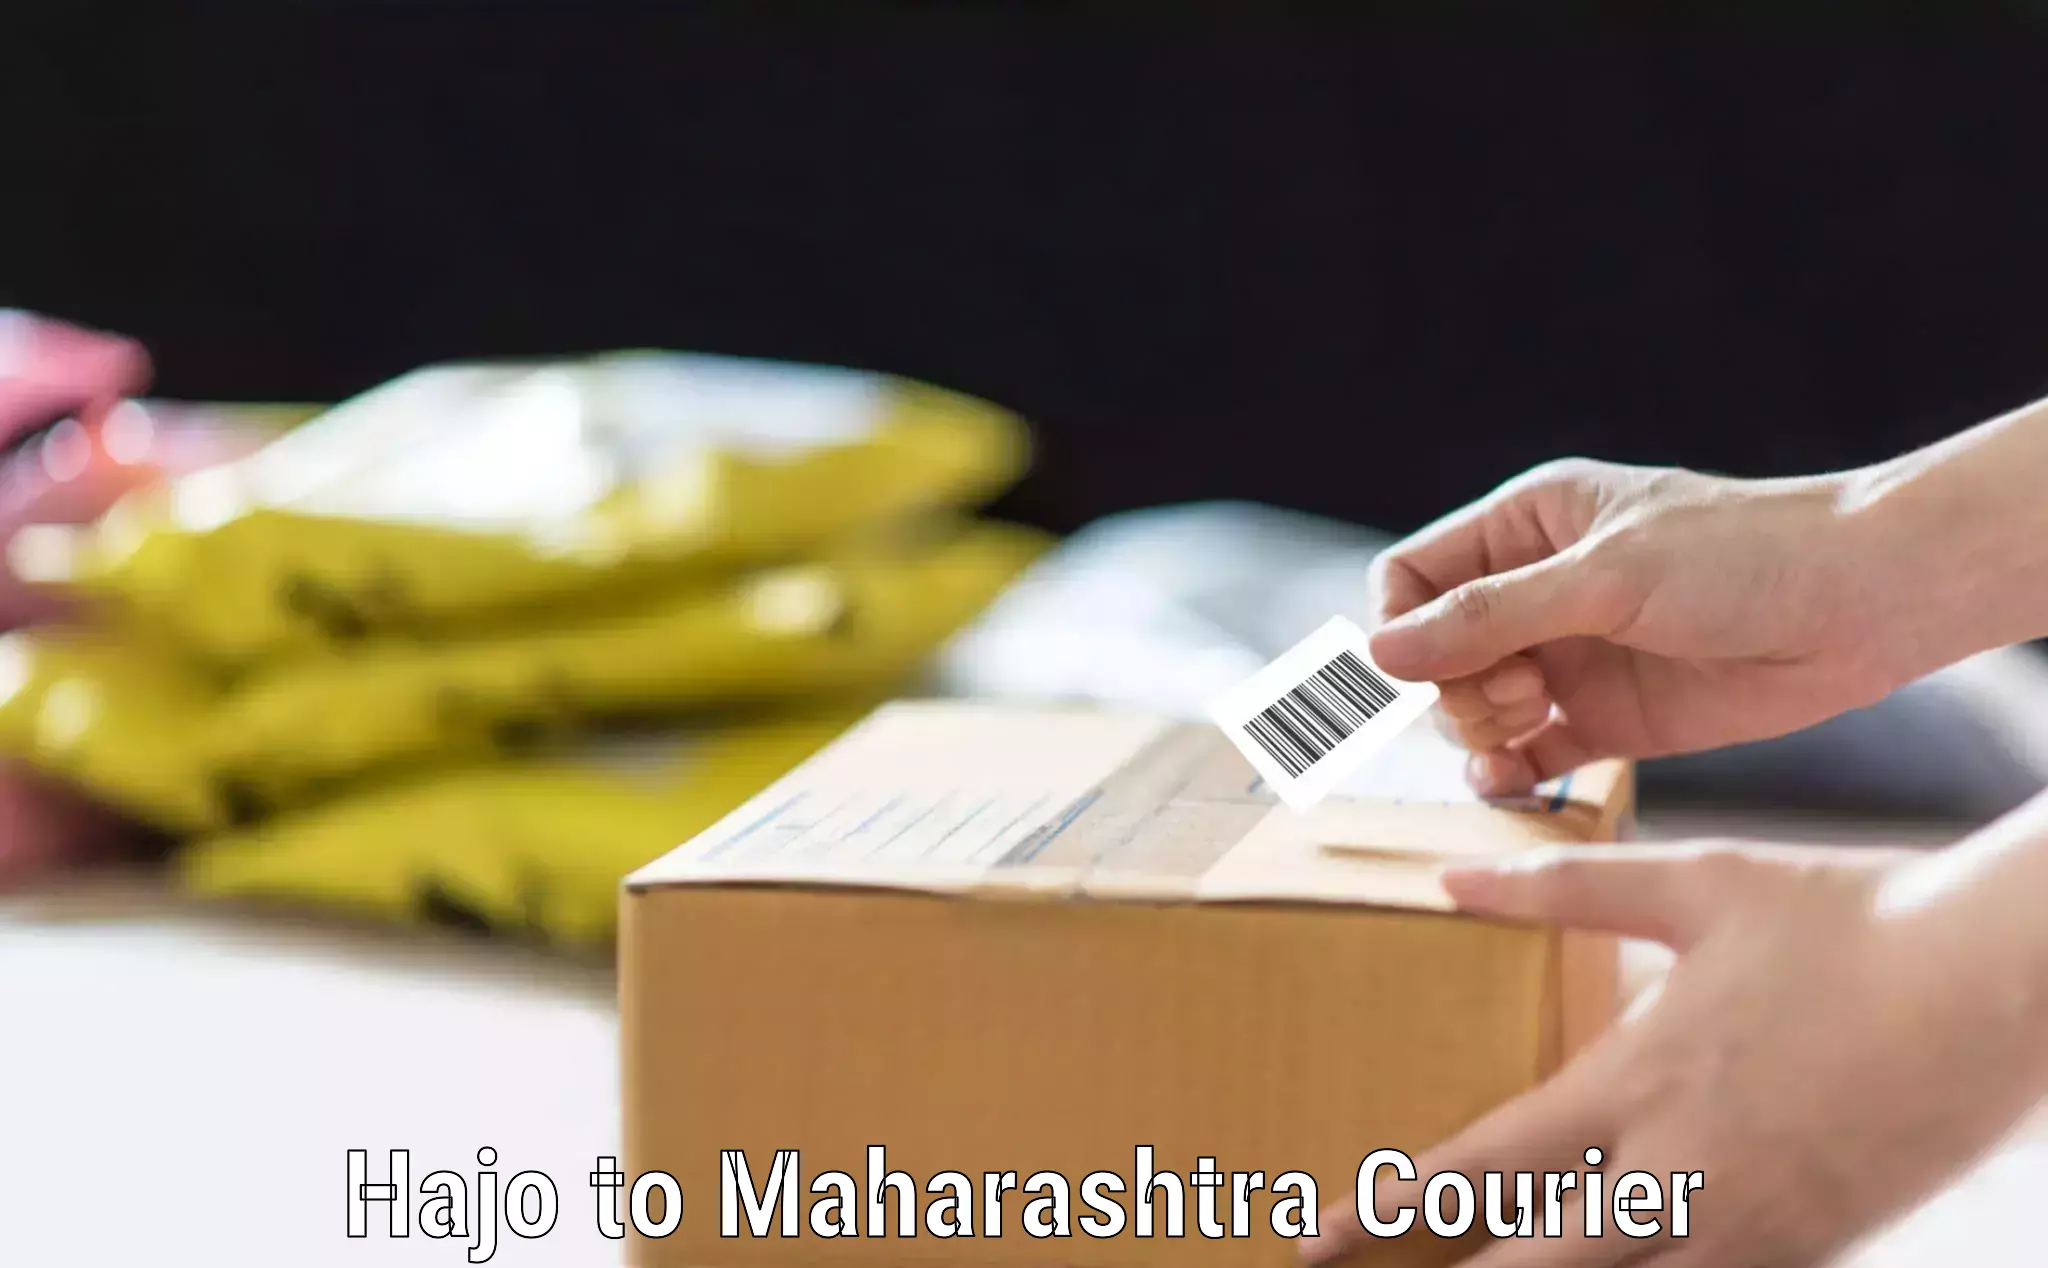 Online luggage shipping Hajo to Maharashtra